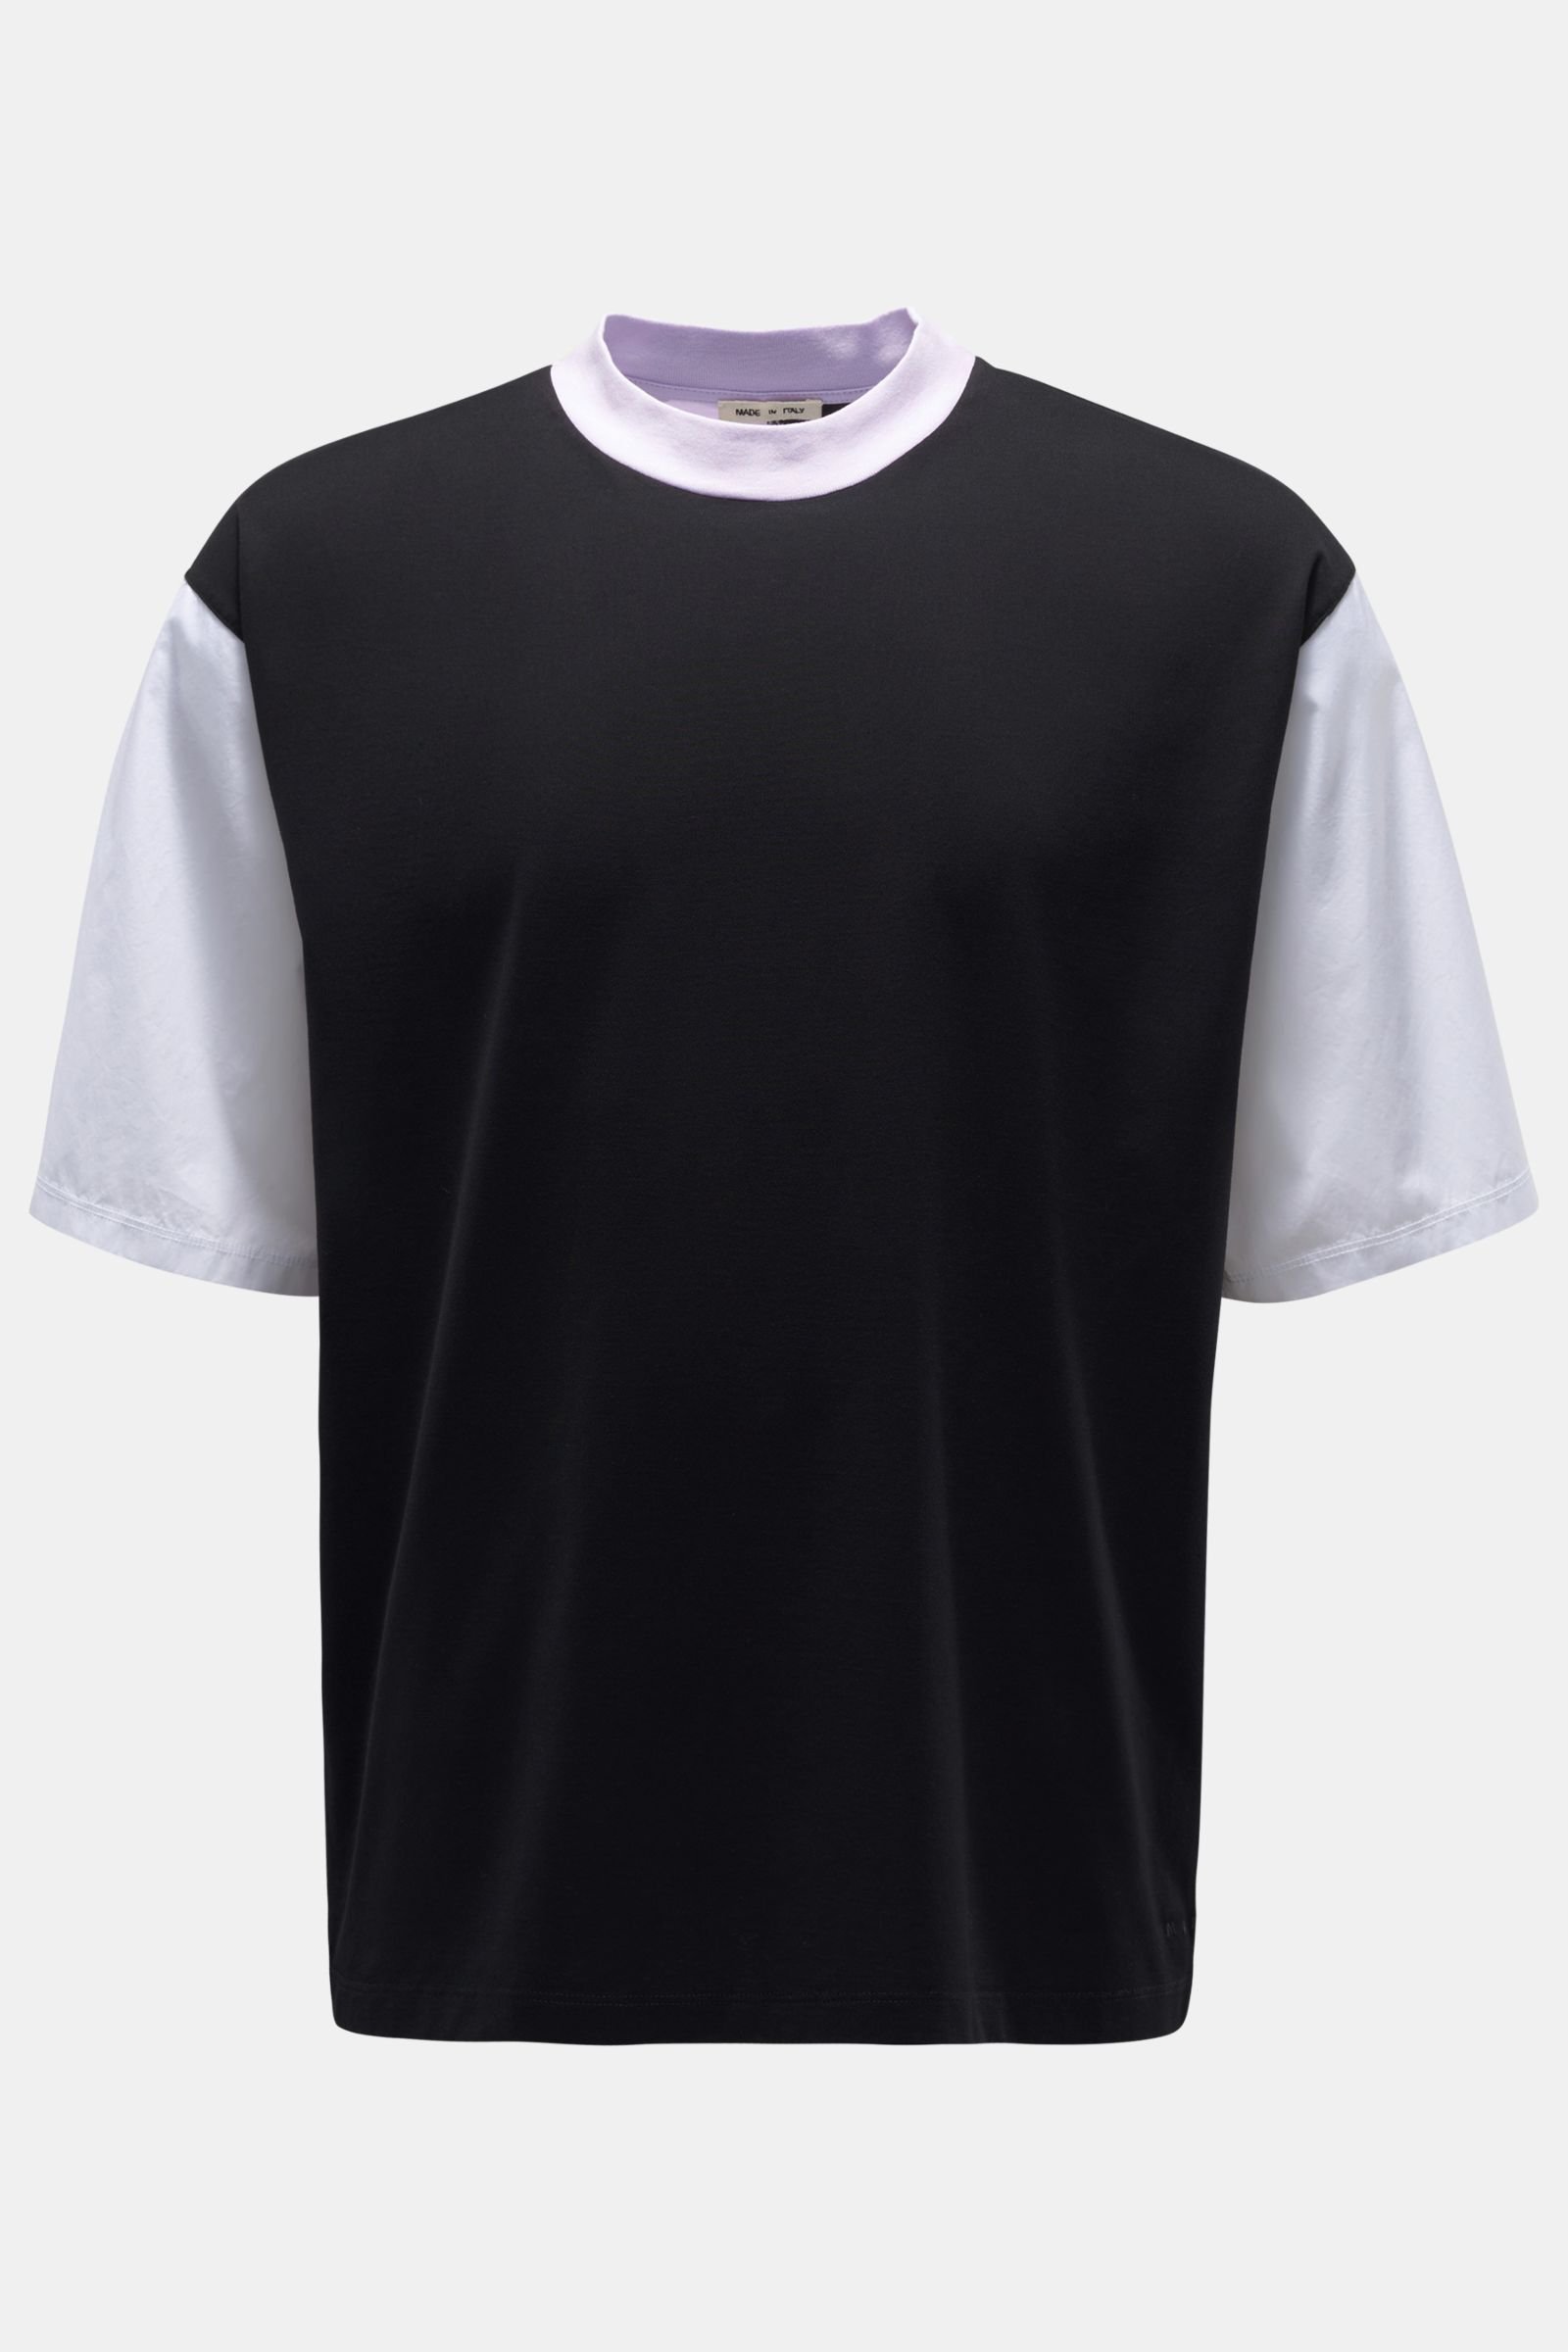 Rundhals-T-Shirt schwarz/violett/weiß